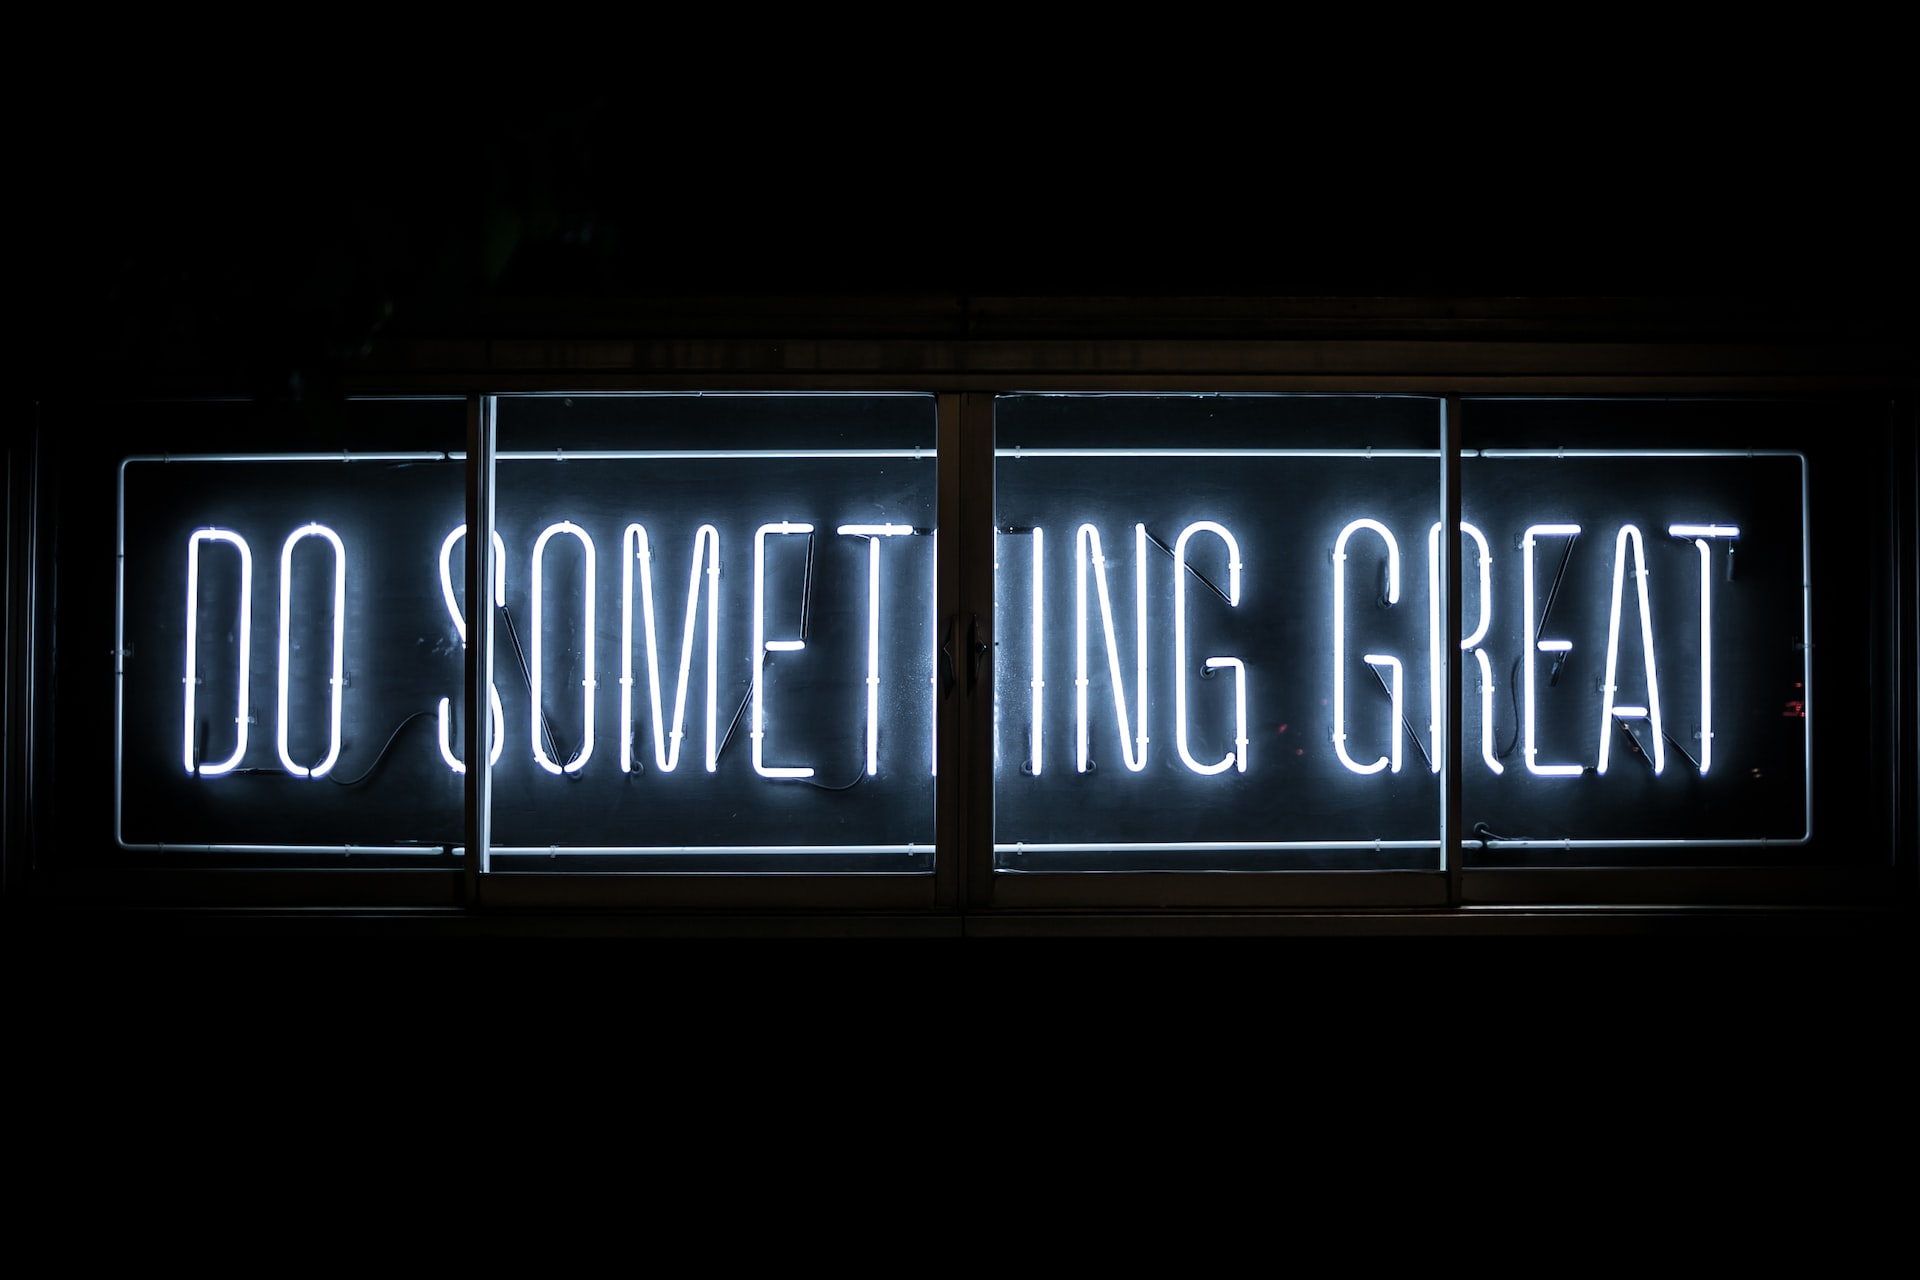 Neon lettering spelling "Do something Great"